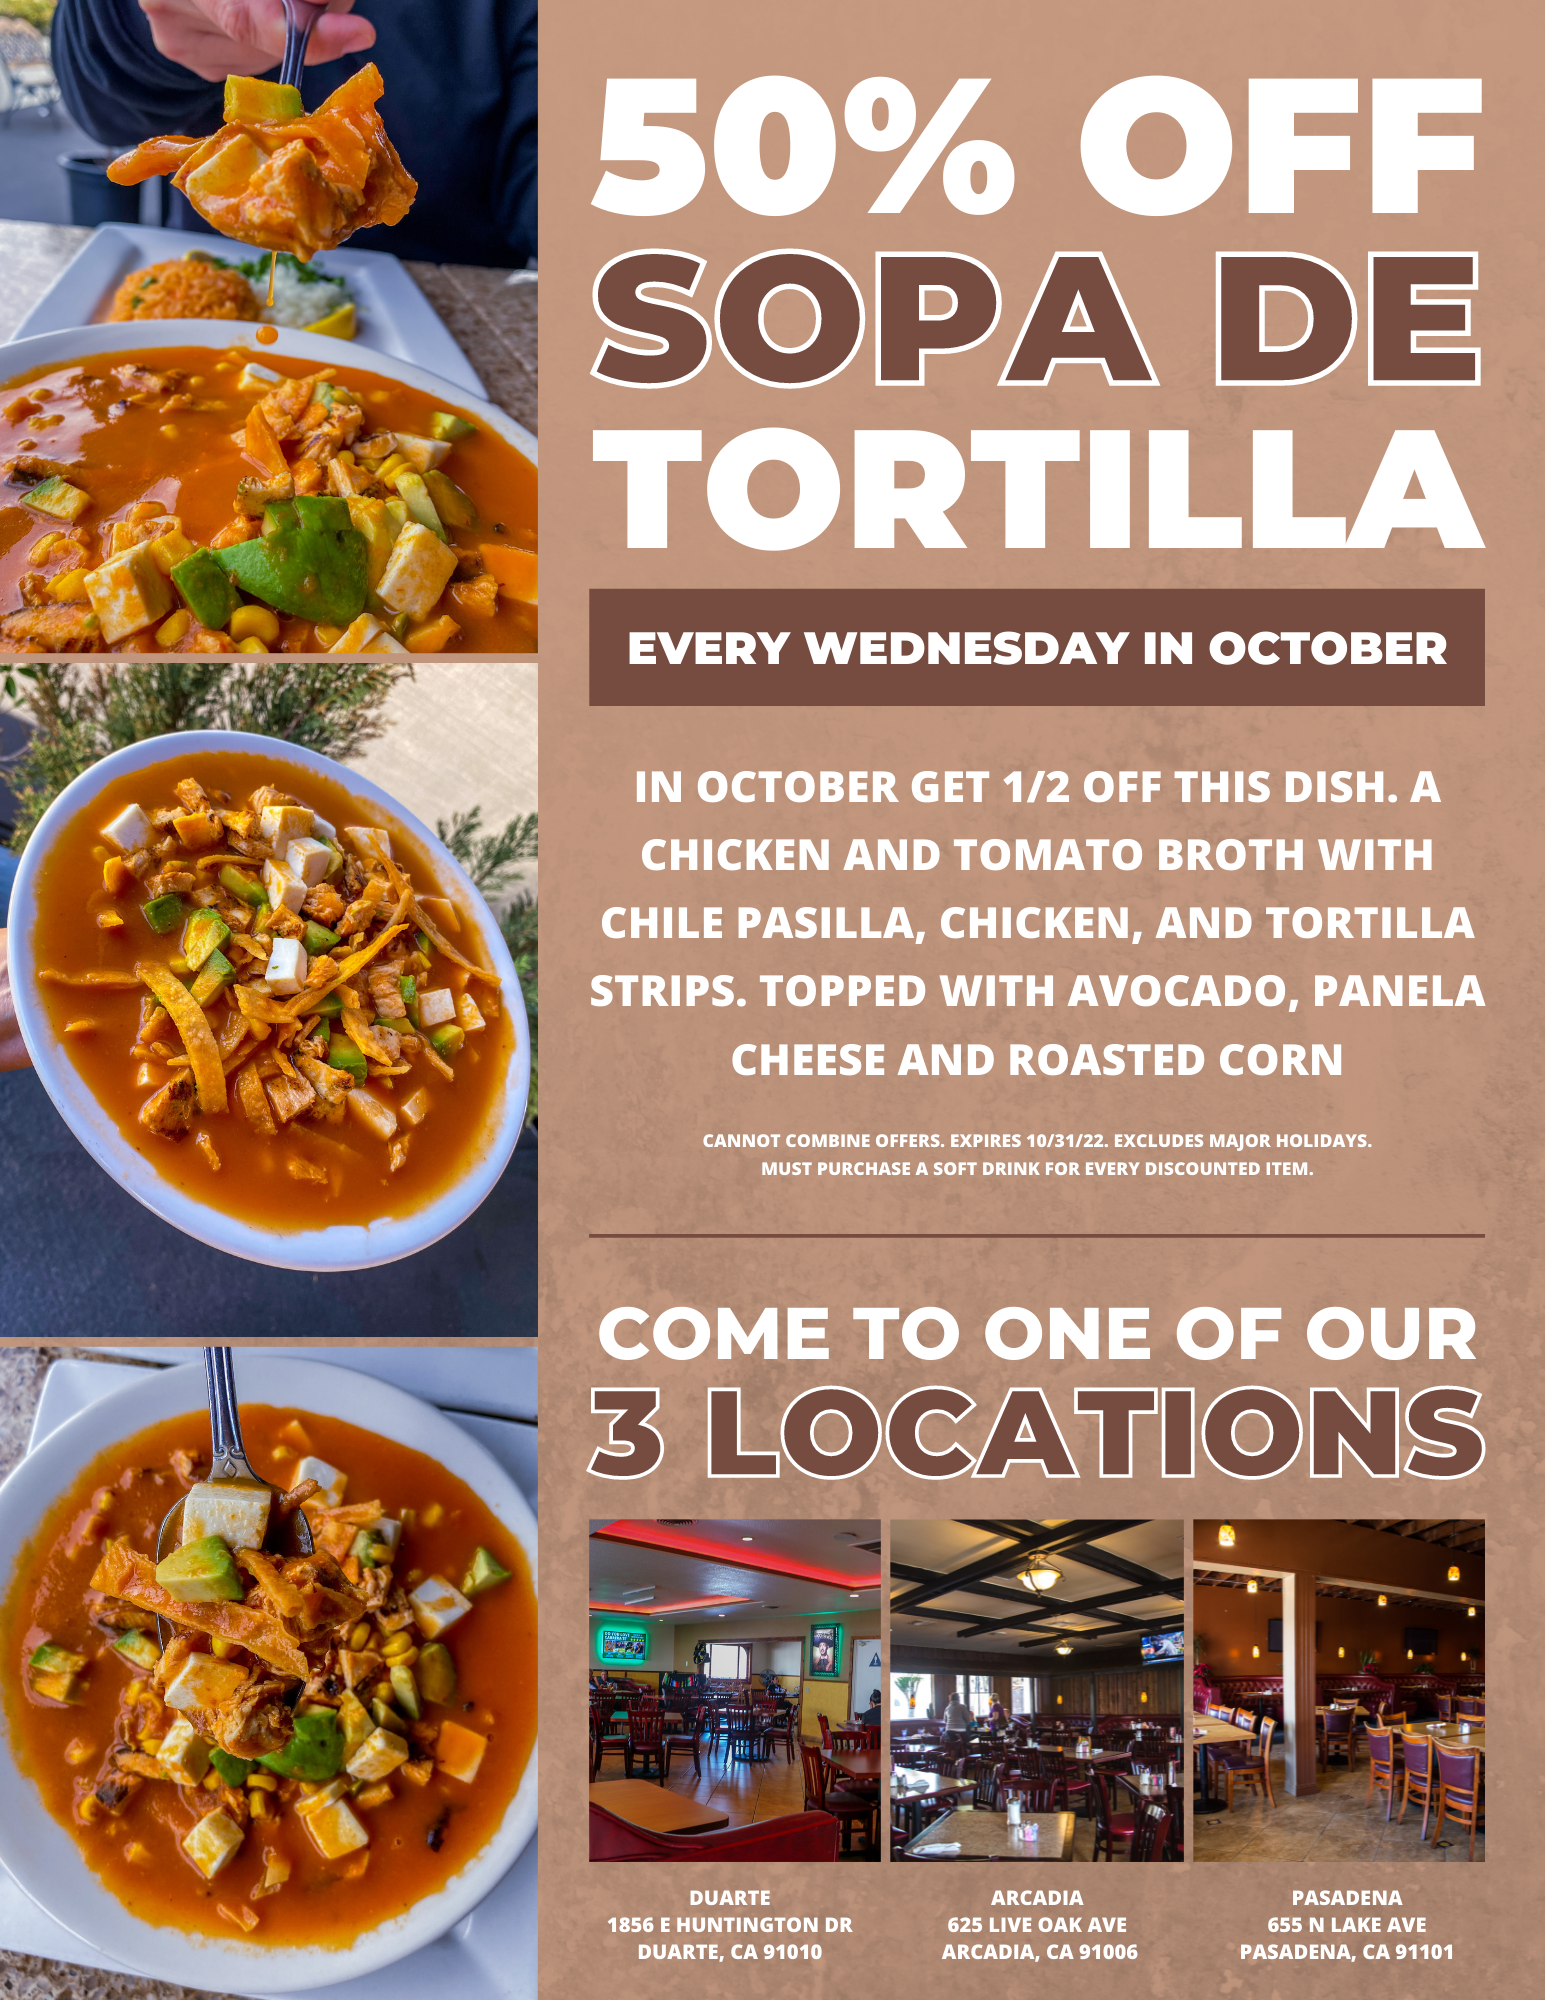 Cabrera's October special of sopa de tortilla every Wednesday